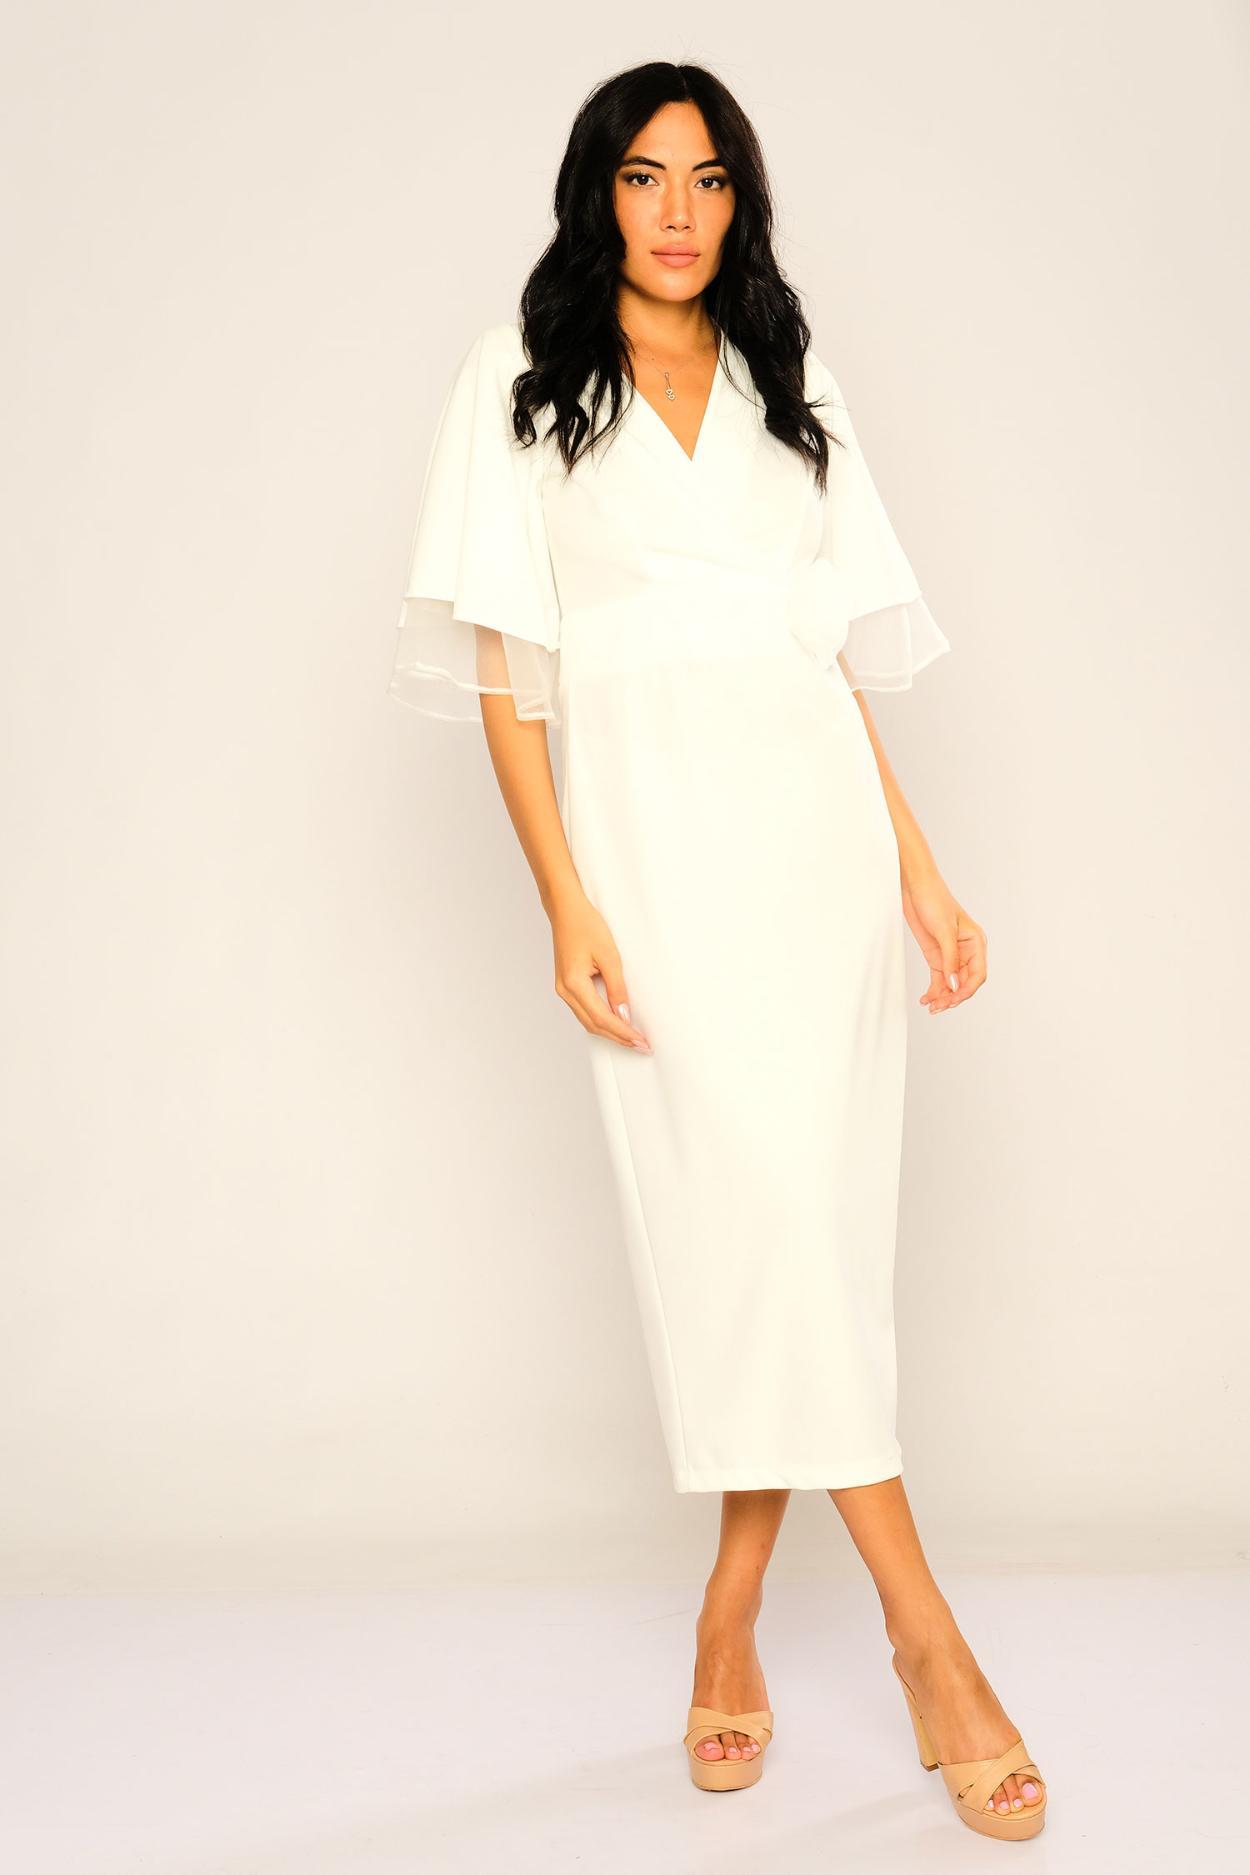 Mamatayoe Womens Cereza Casual Dress, Taupe UK Size XL